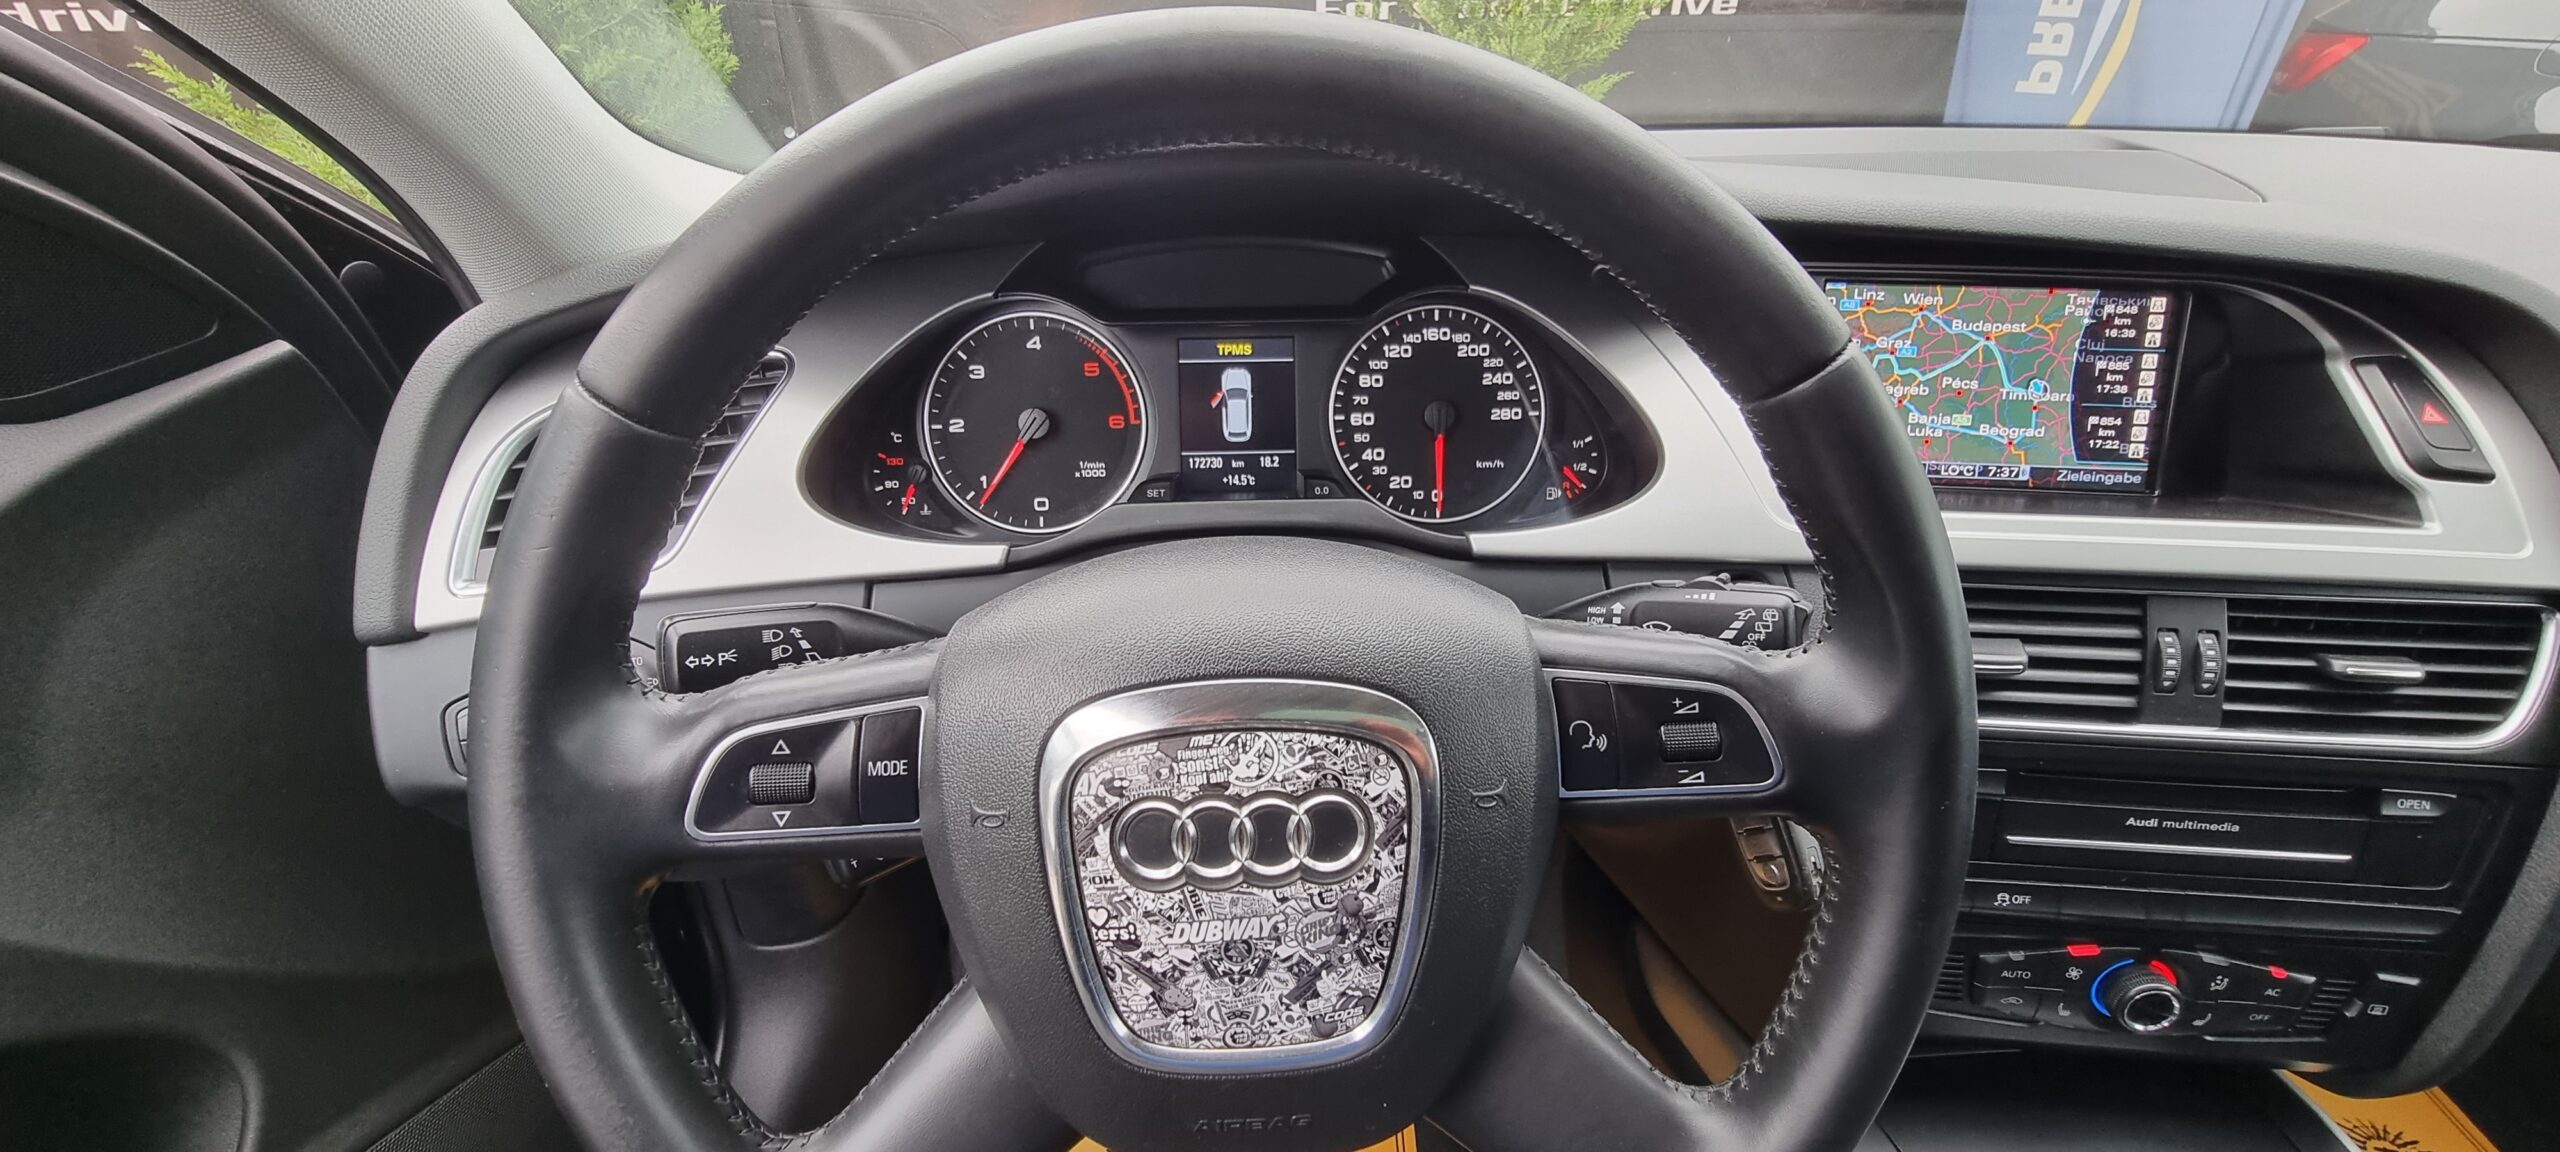 Audi A4 An 2012 Panoramic